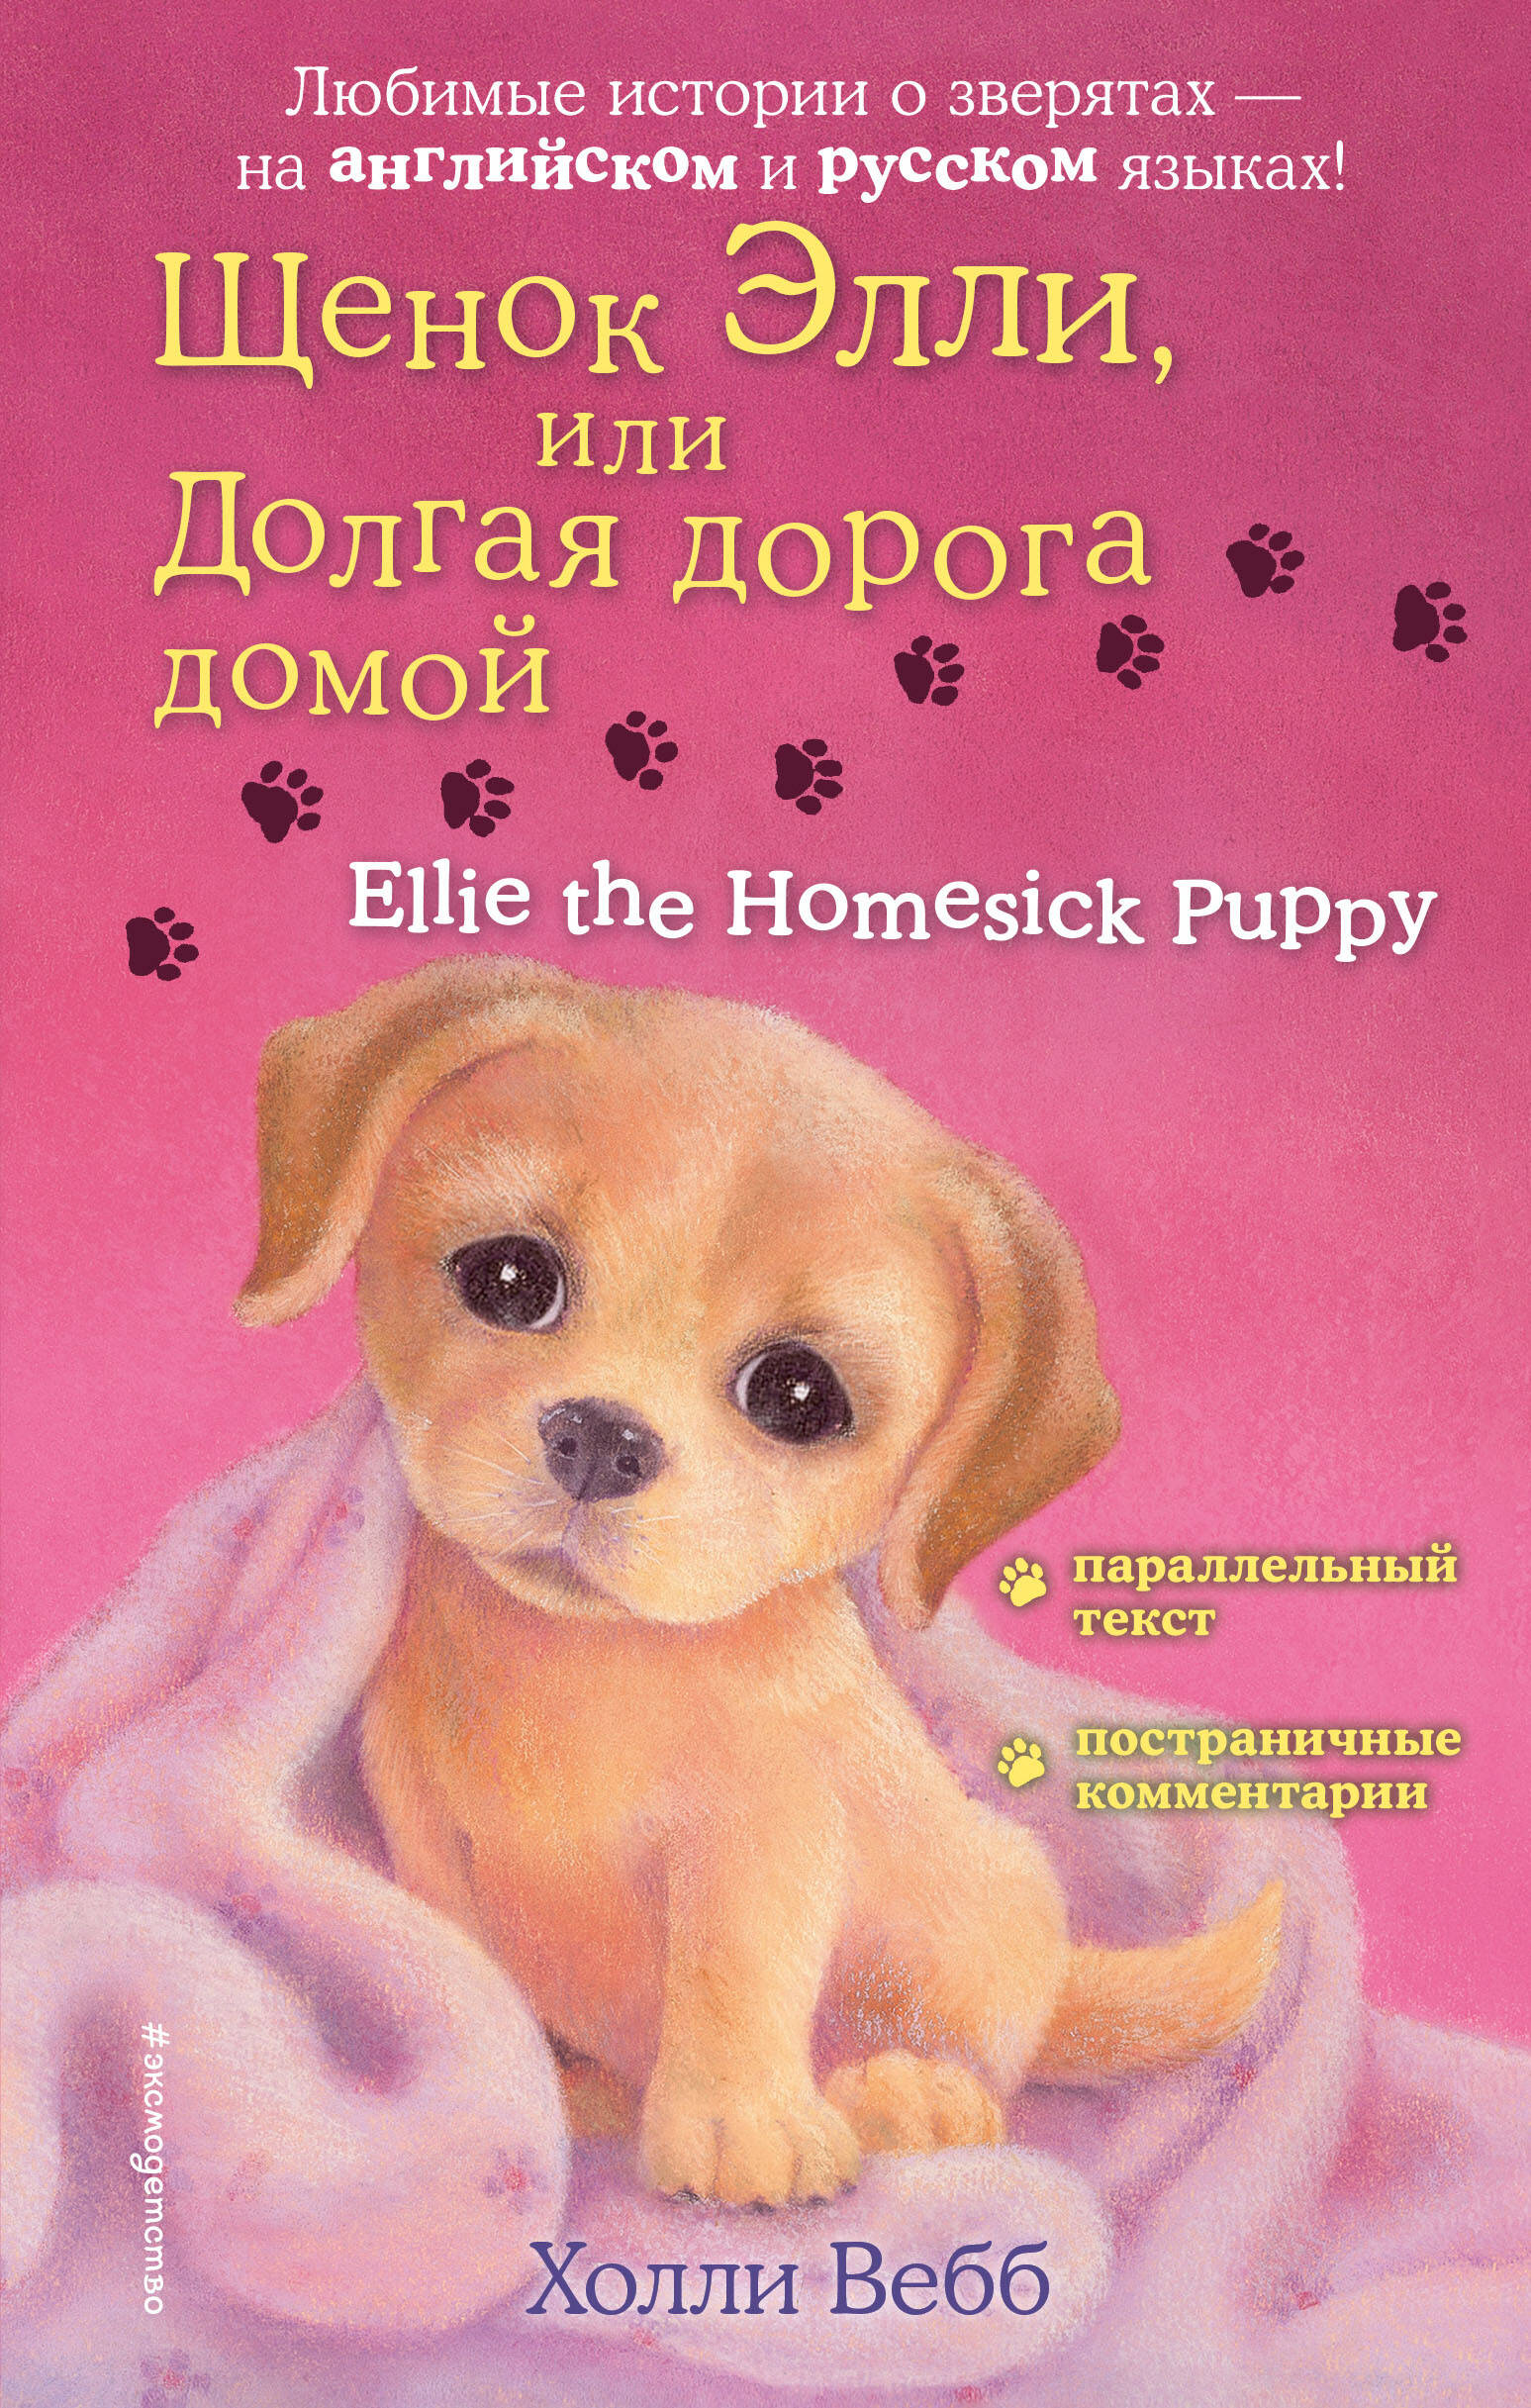  книга Щенок Элли, или Долгая дорога домой = Ellie the Homesick Puppy